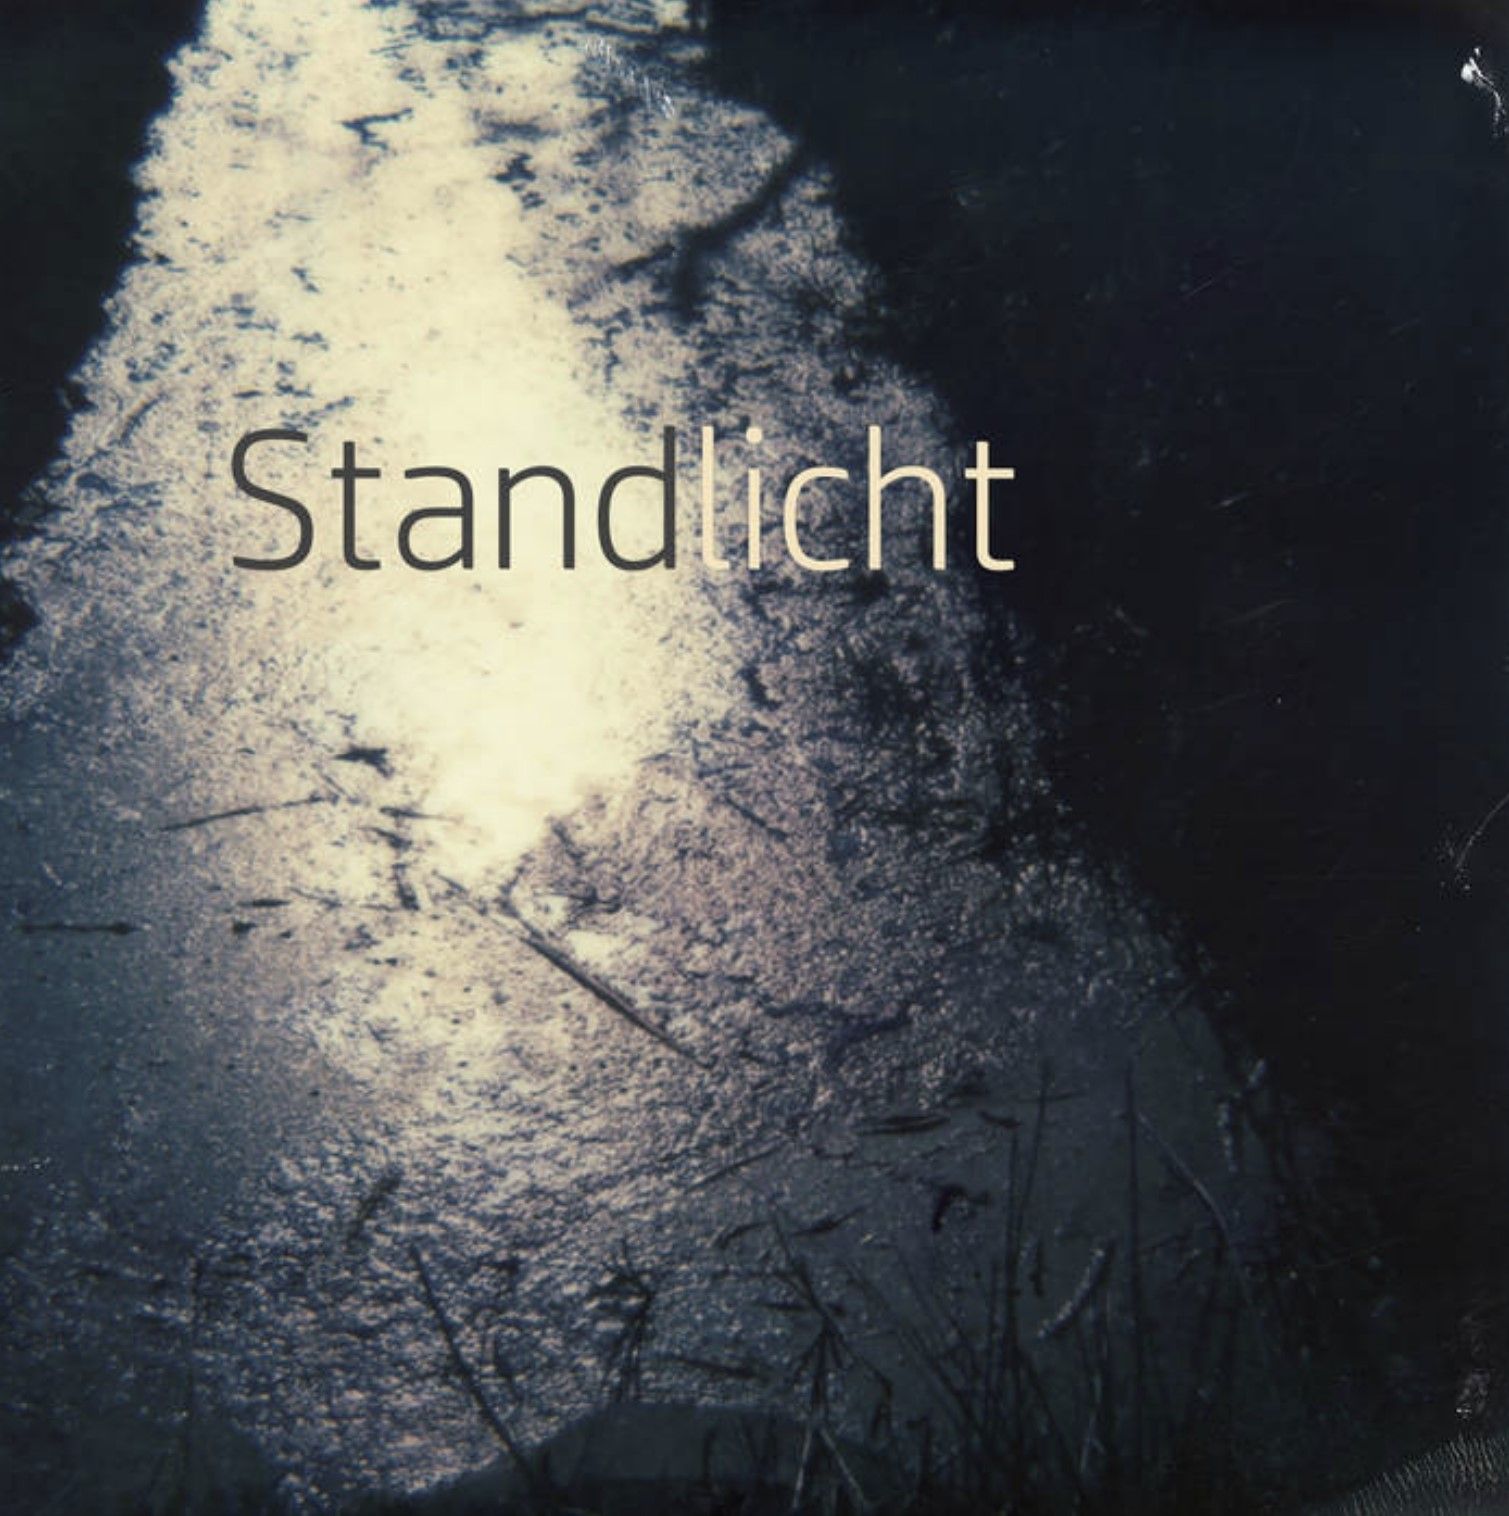 Coverbild des Hörbuchs STANDLICHT von Jacqueline Majumder. Polaroid von Jacqueline Majumder